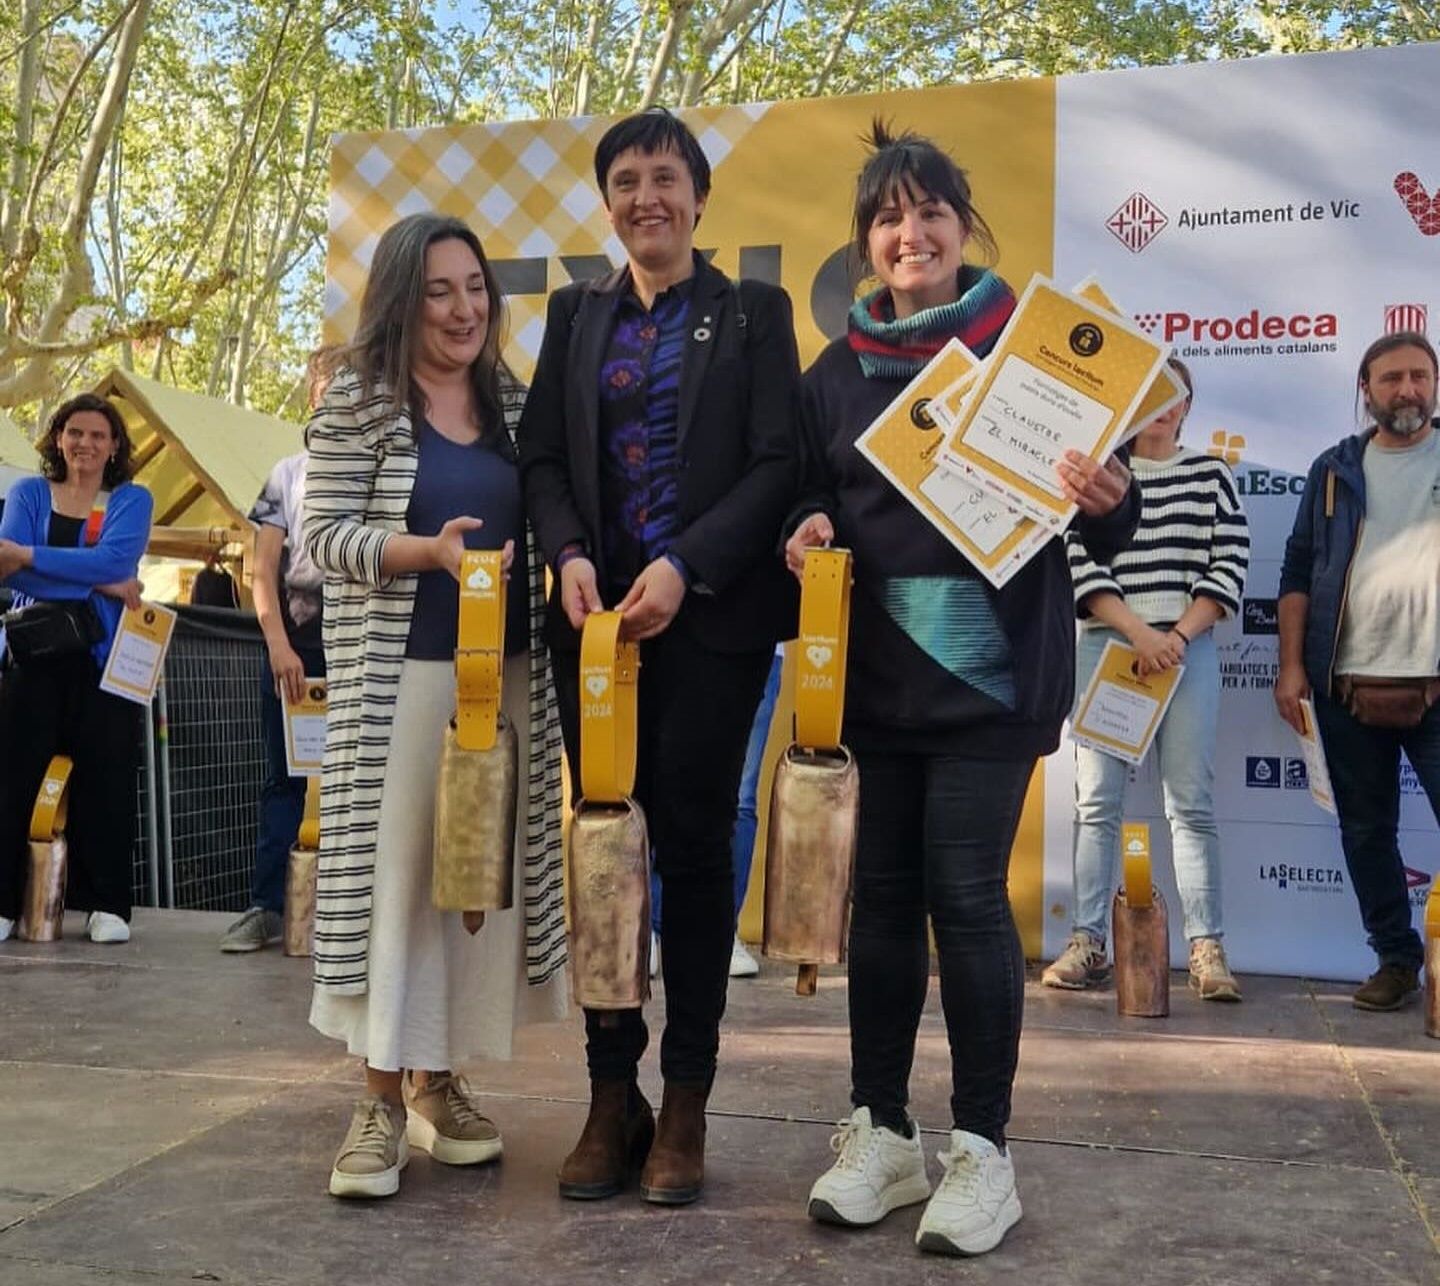 Silvia Soler, de la Formatgeria El Miracle, a la dreta, amb els premis aconseguits